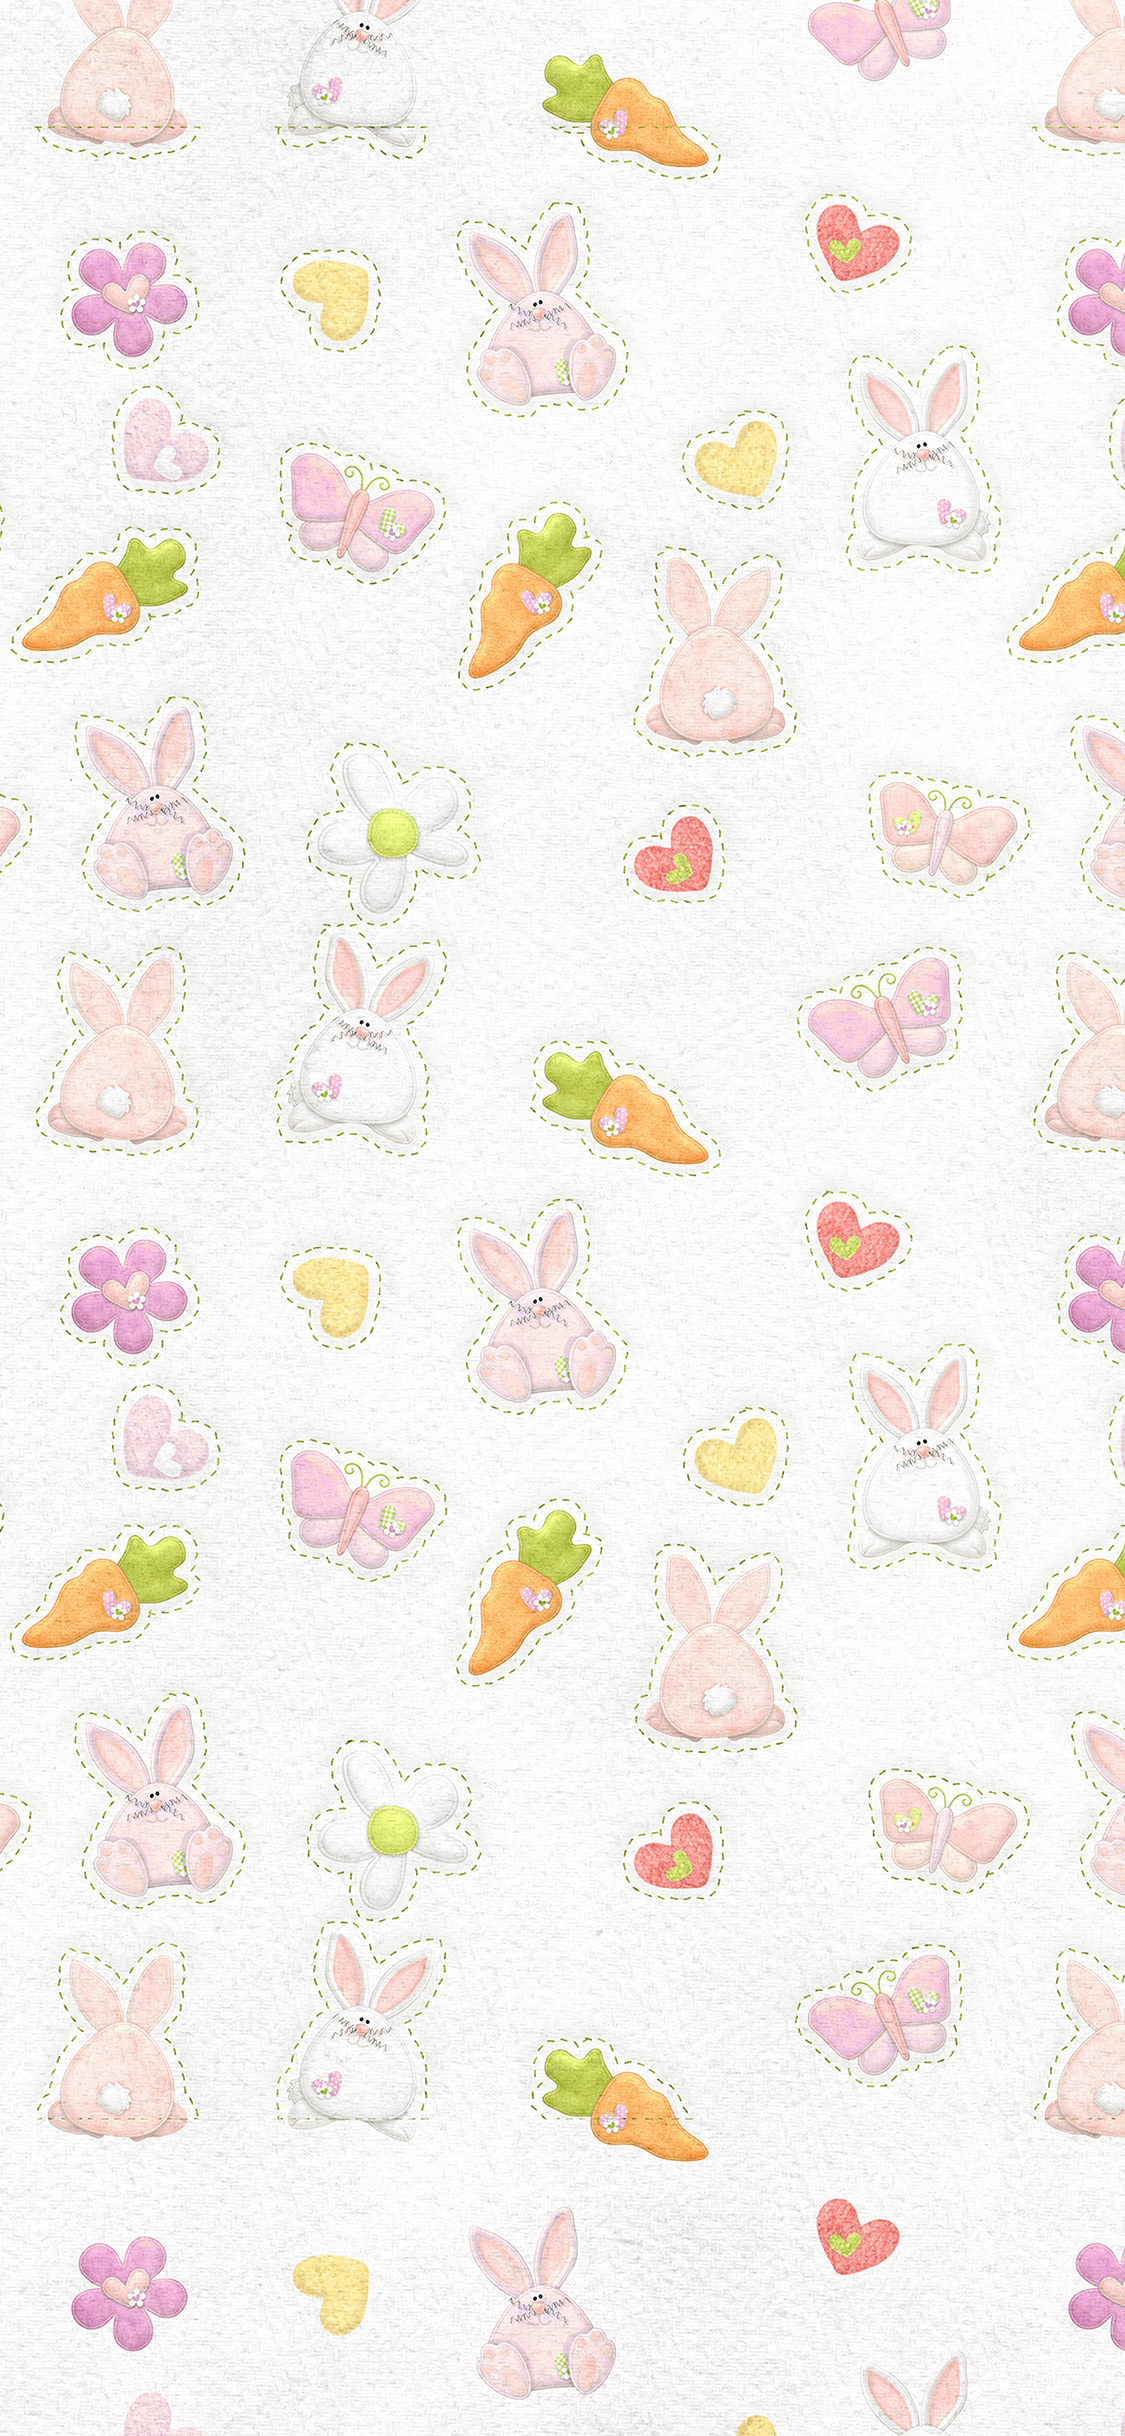 29+] Pink Bunny IPhone Wallpapers - WallpaperSafari